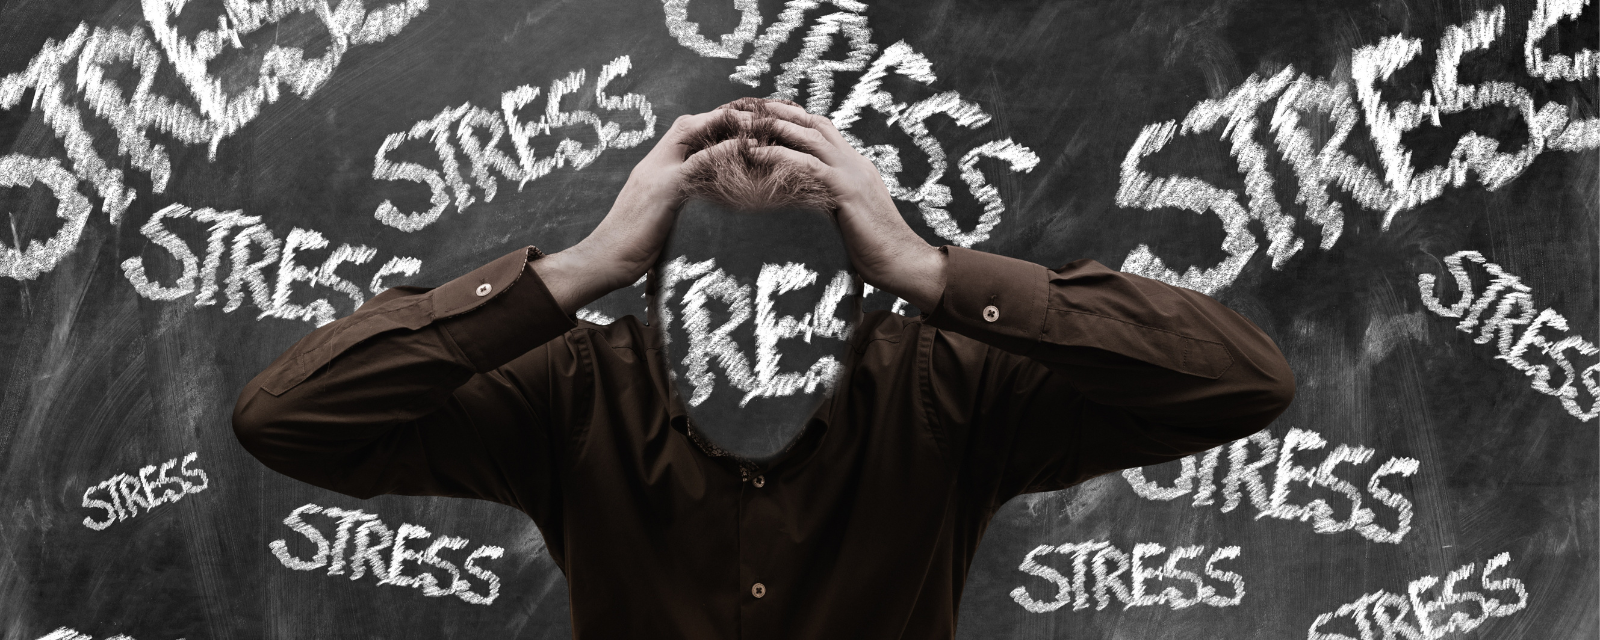 Mann hält mit beiden Händen seinen Kopf, im Hintergrund eine Tafel mit dem sich wiederholenden Wort "Stress"